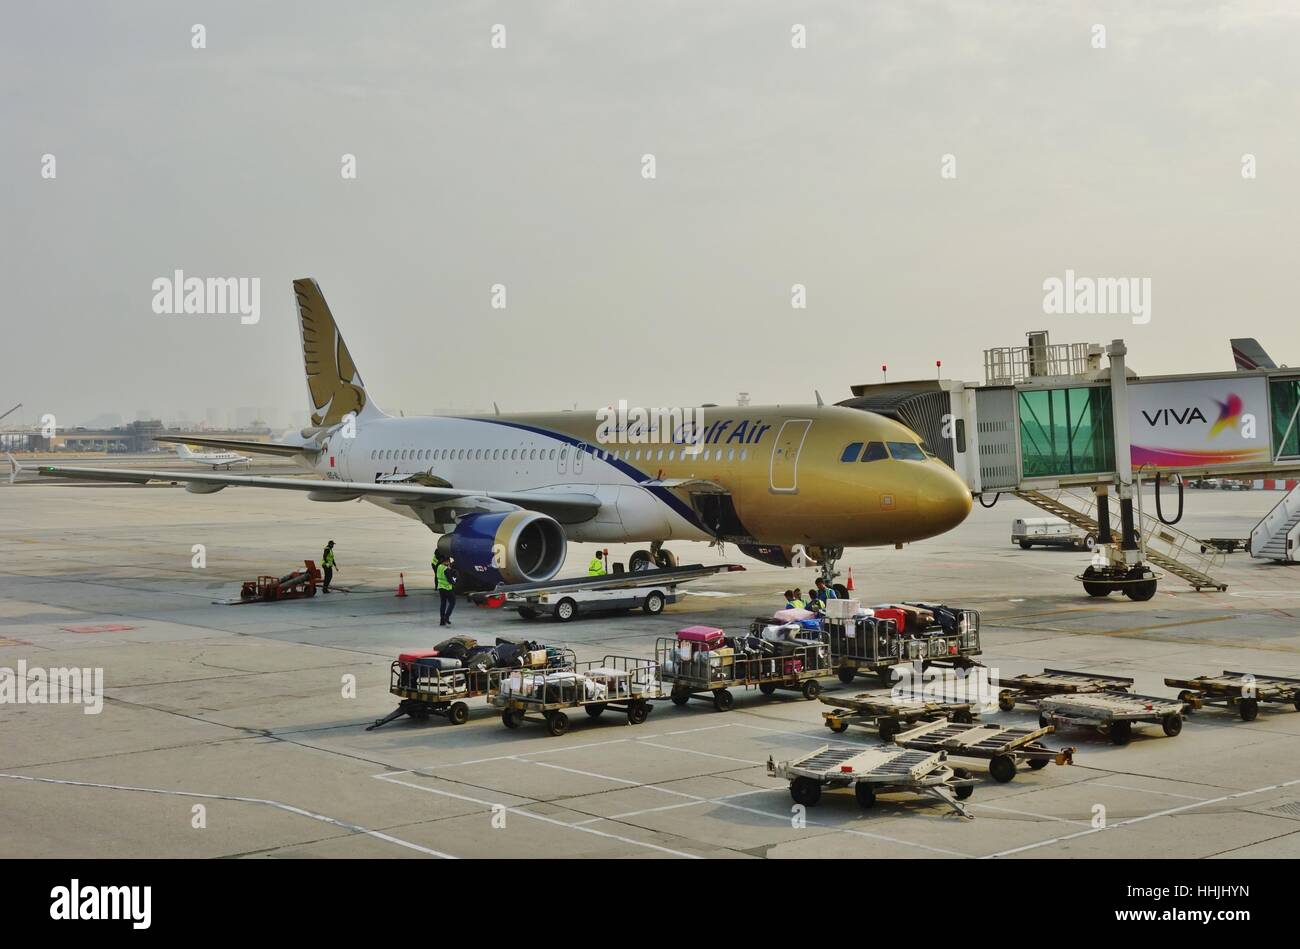 L'Aéroport International de Bahreïn (BAH) près de Manama, la capitale de Bahreïn. C'est un noeud de transporteur national Gulf Air (GF). Banque D'Images